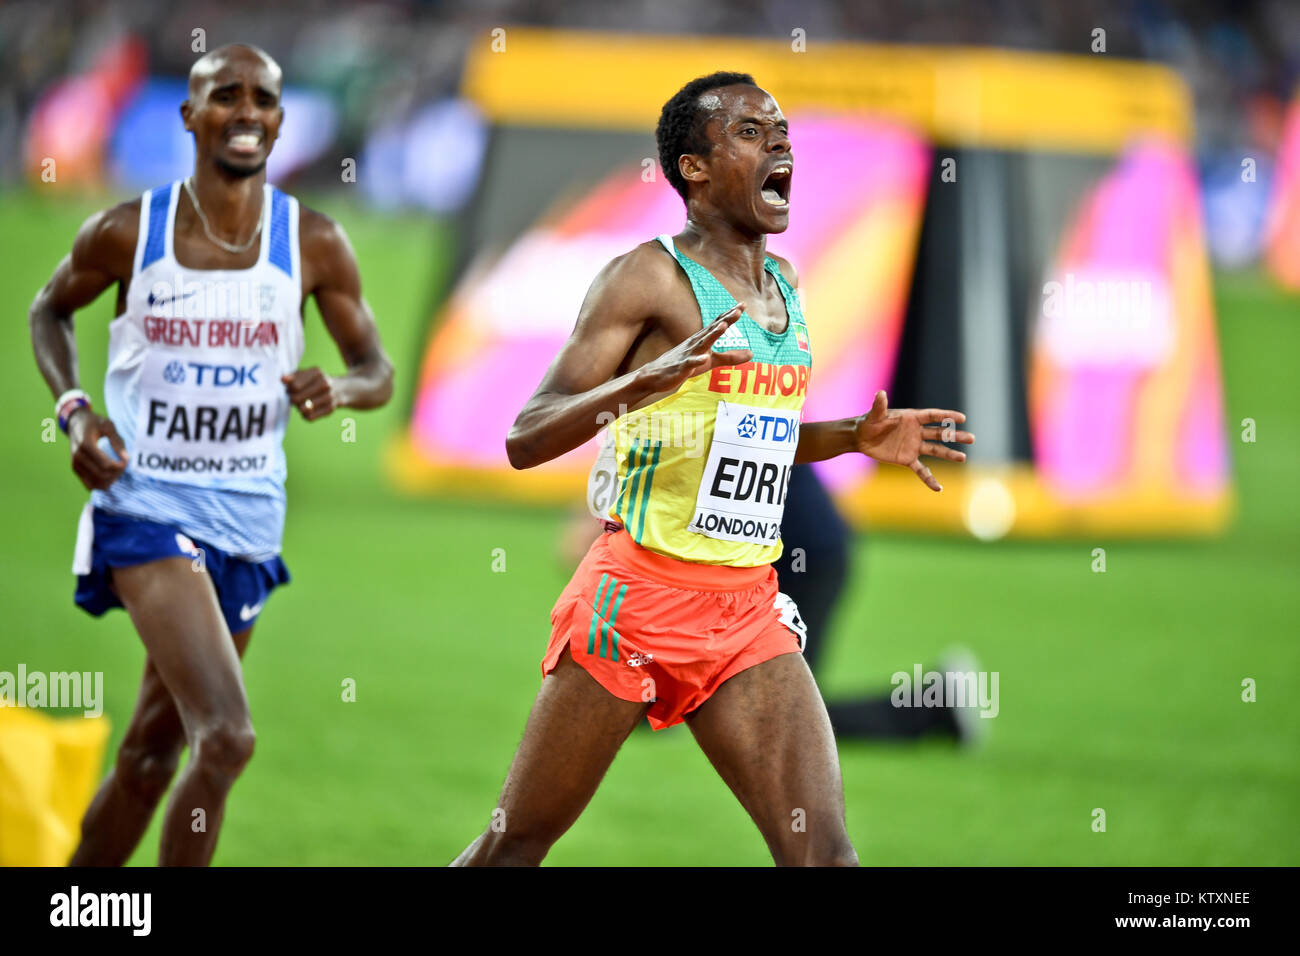 Muktar Edris (Éthiopie) remporte le 5000m hommes Médaille d'or, laissant Mo Farah (Grande-Bretagne) à la deuxième place aux Championnats du monde IAAF - London 2017 Banque D'Images